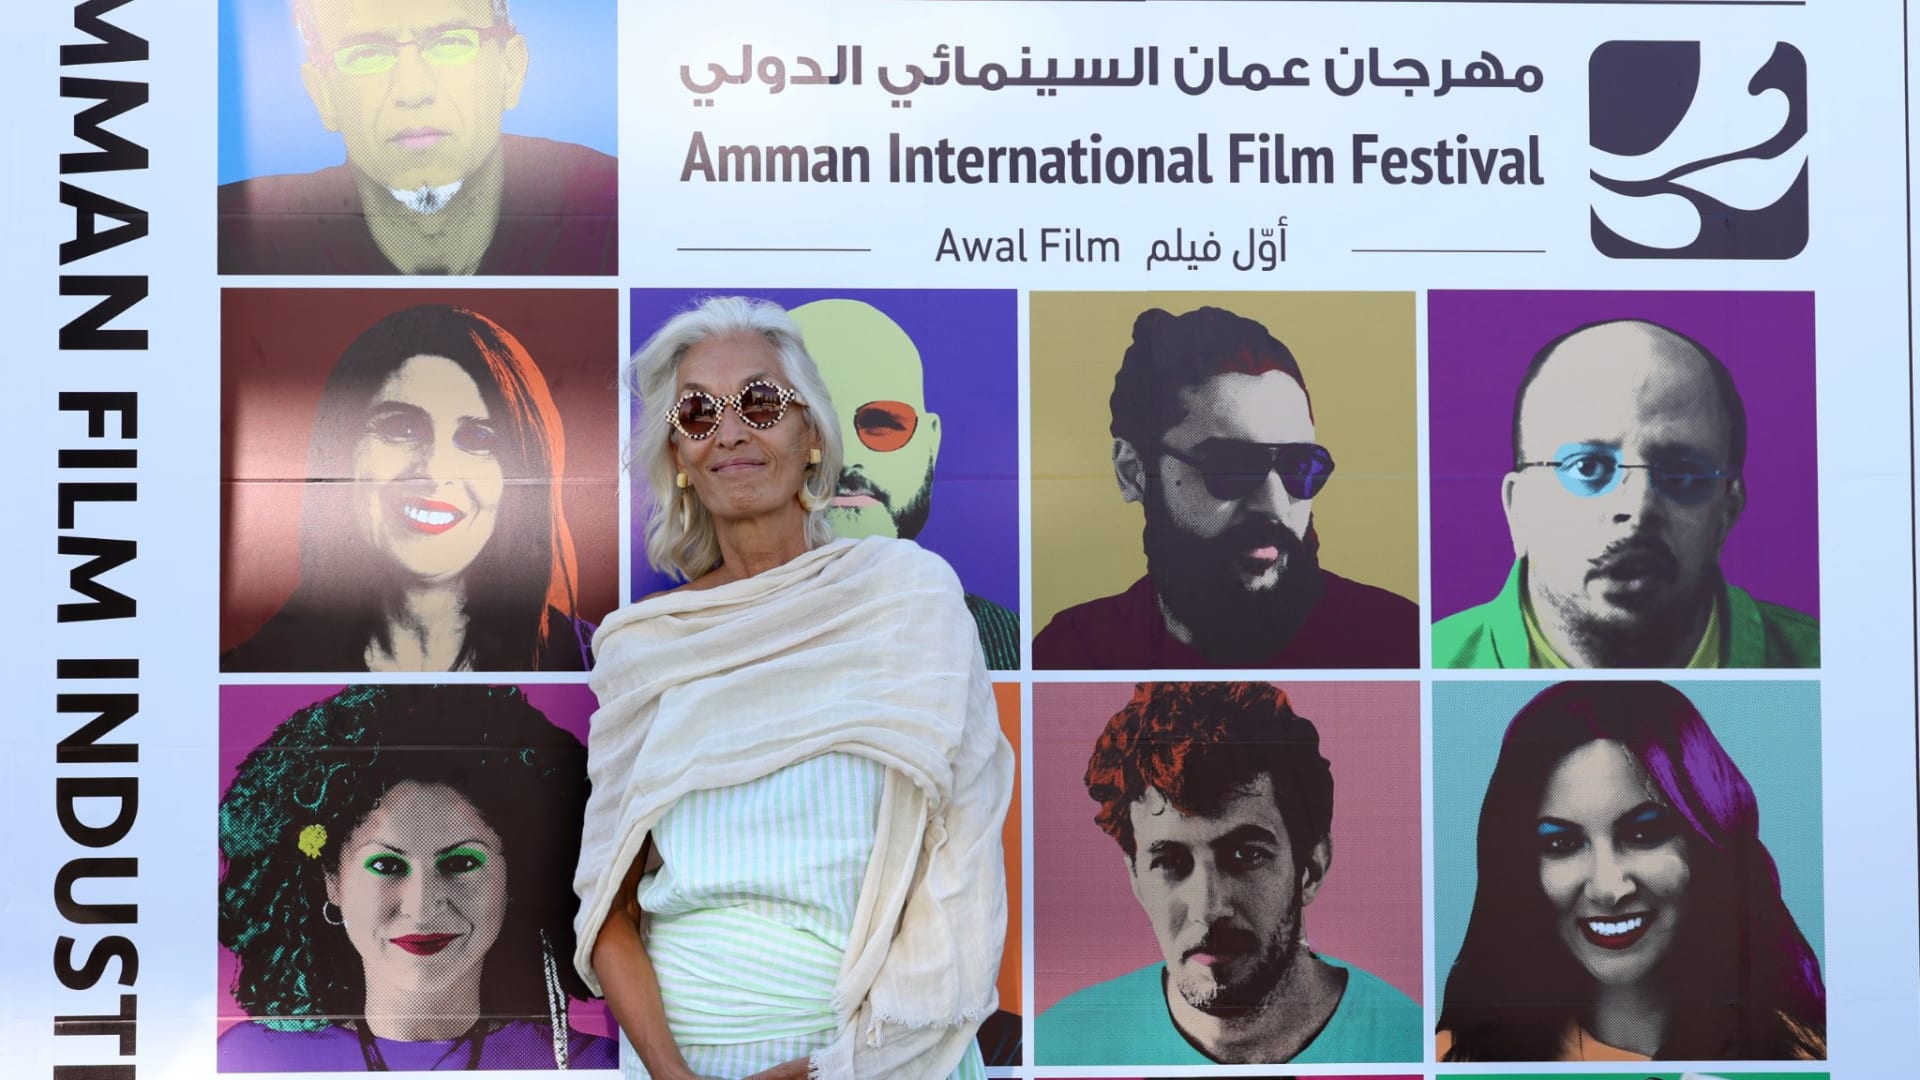 عن أول فيلم وأول حب… مهرجان عمان السينمائي يفتح نافذة أمل جديدة لصناع الأفلام